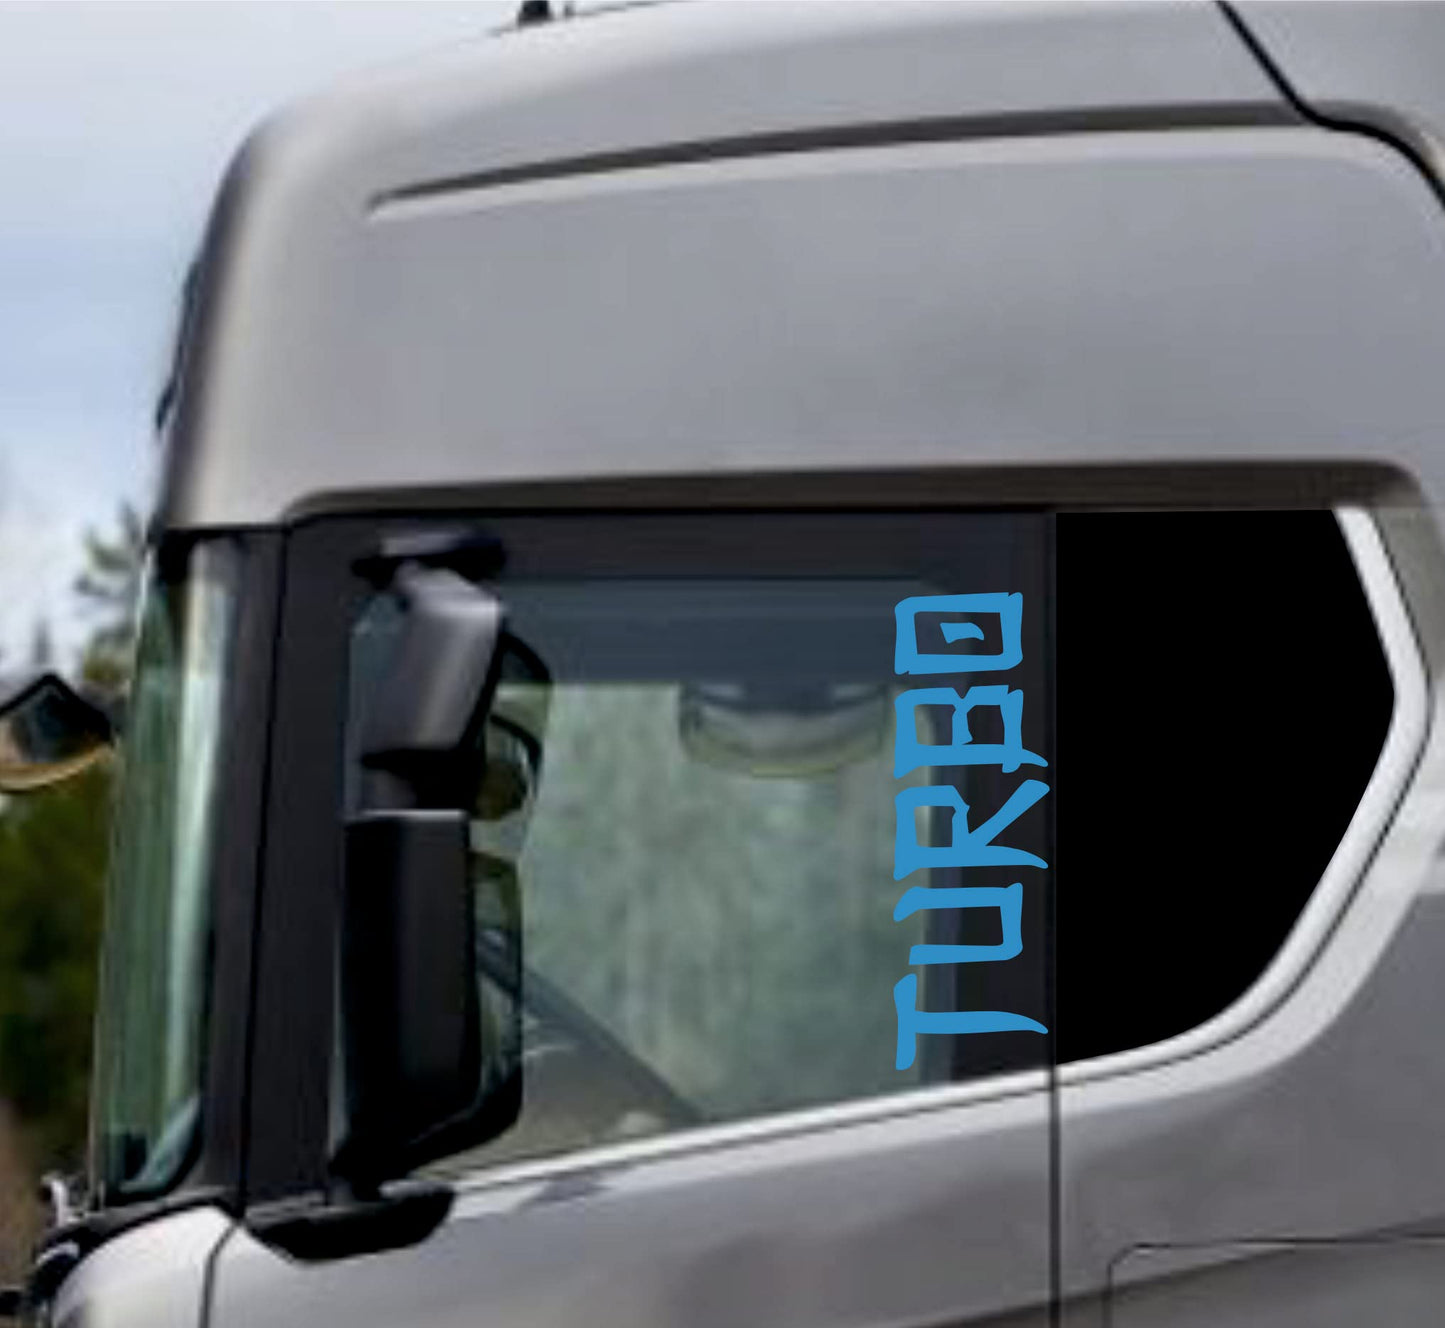 DualColorStampe Adesivi Compatibili con Scania Daf Iveco Man Camion accessori camion stickers camion finestrino TURBO COD.0305 a €19.99 solo da DualColorStampe